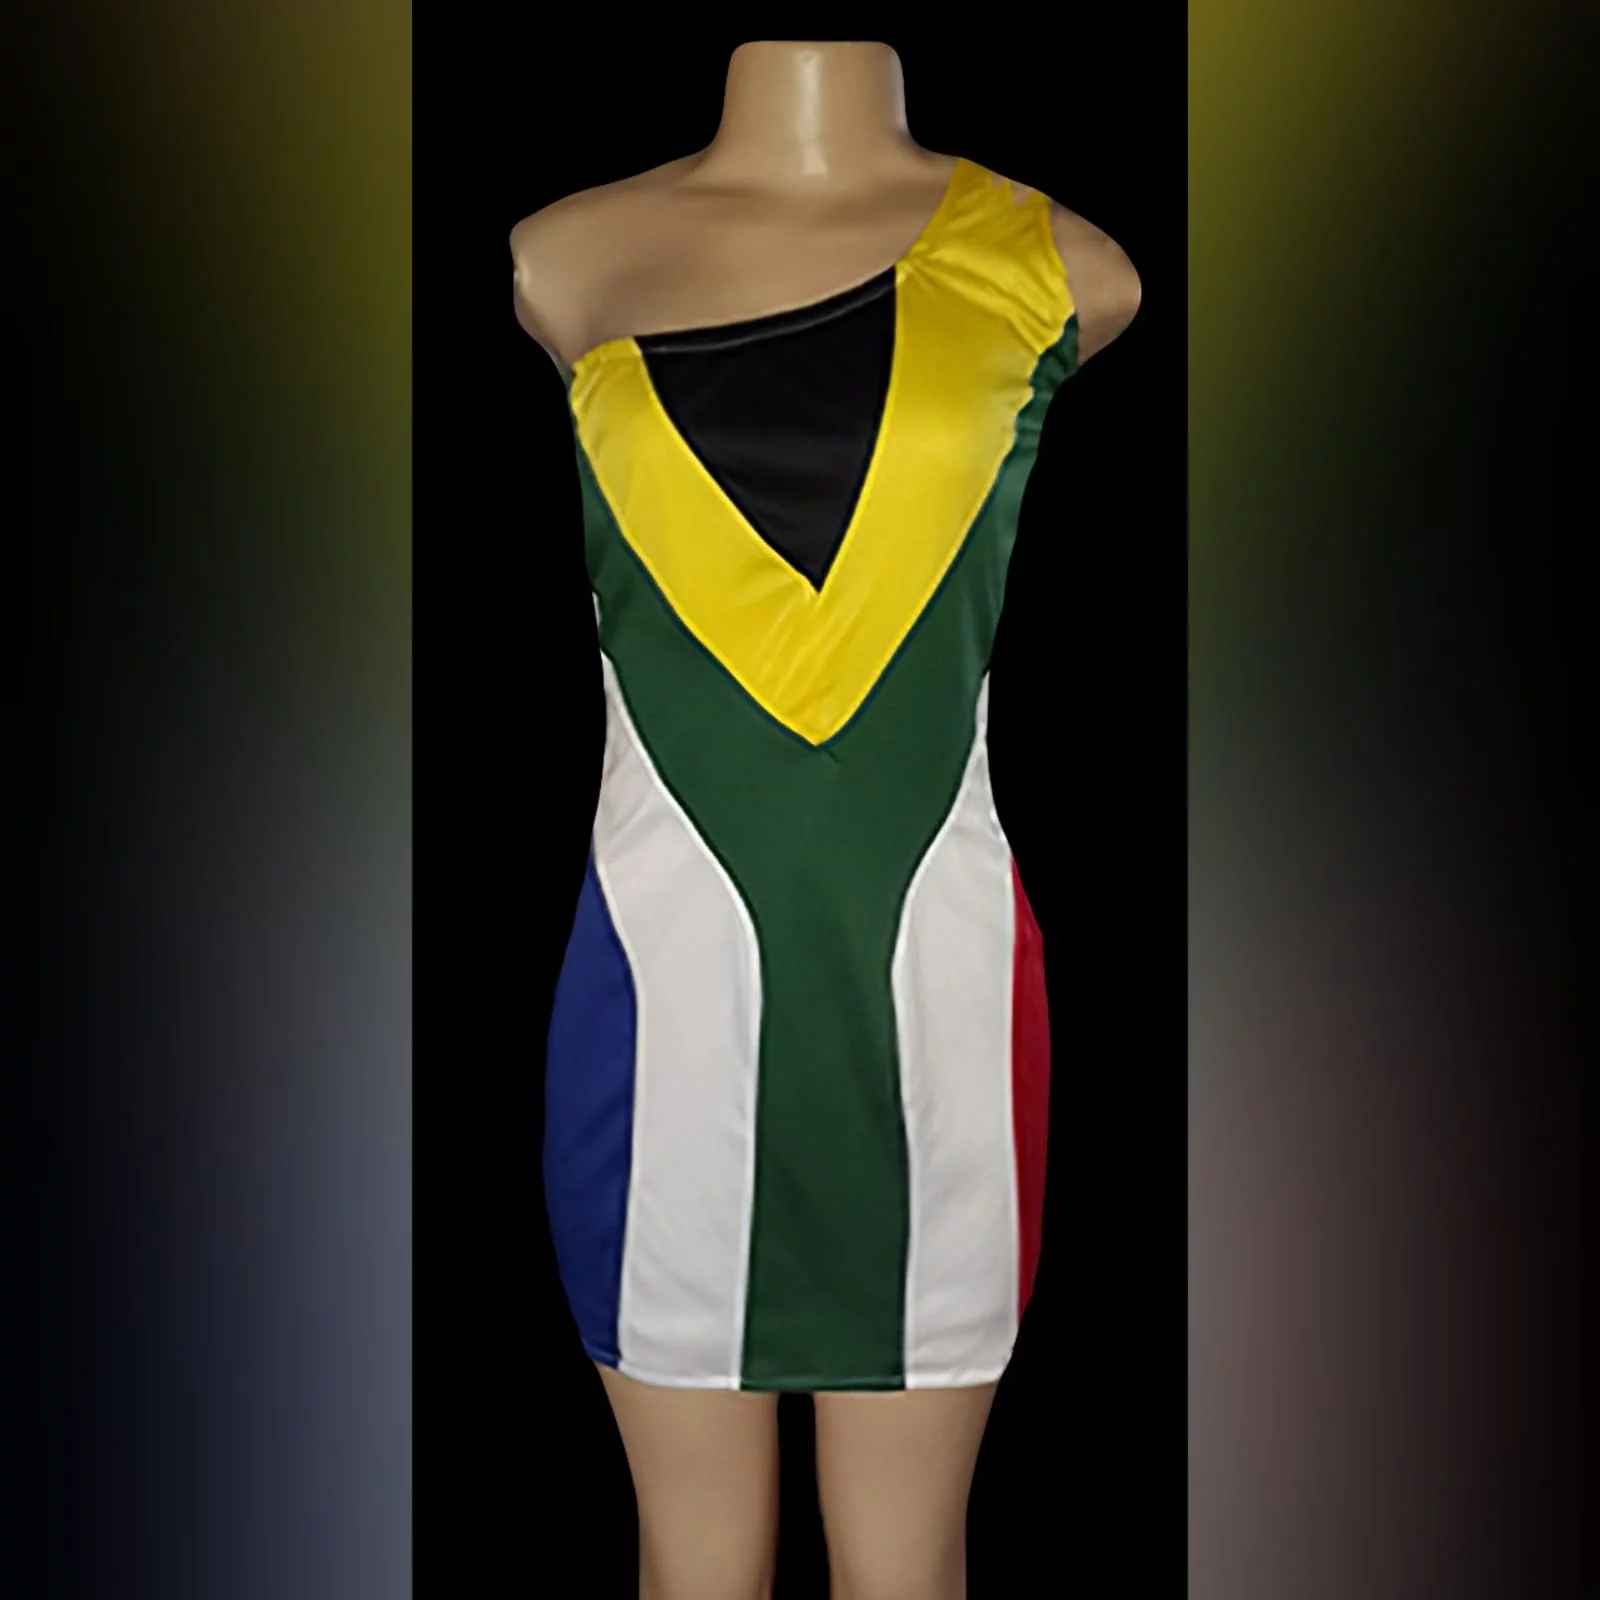 Vestido de bandeira da áfrica do sul com ombro único 3 um mini-vestido de tecido elástico com um único ombro. Vestido com e sem lantejoulas de bandeira. Projetado e feito para um cliente no reino unido